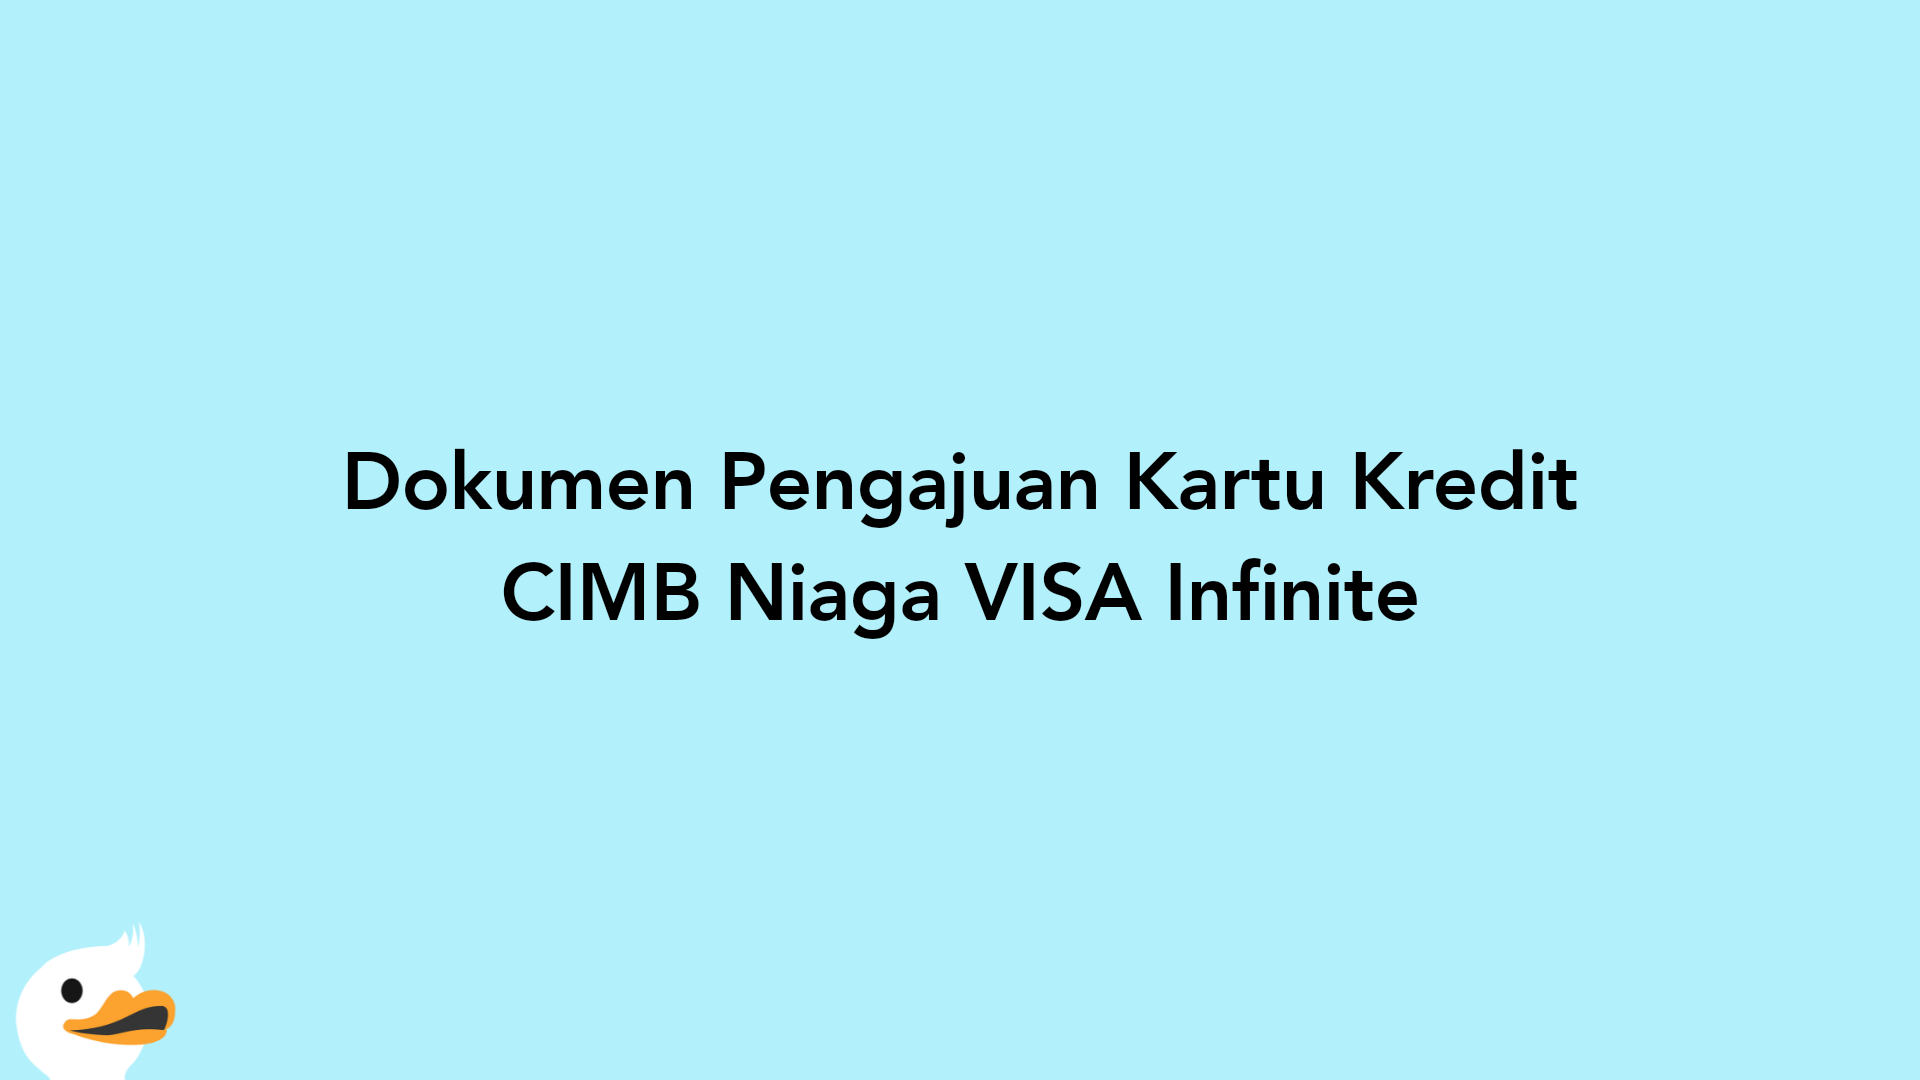 Dokumen Pengajuan Kartu Kredit CIMB Niaga VISA Infinite